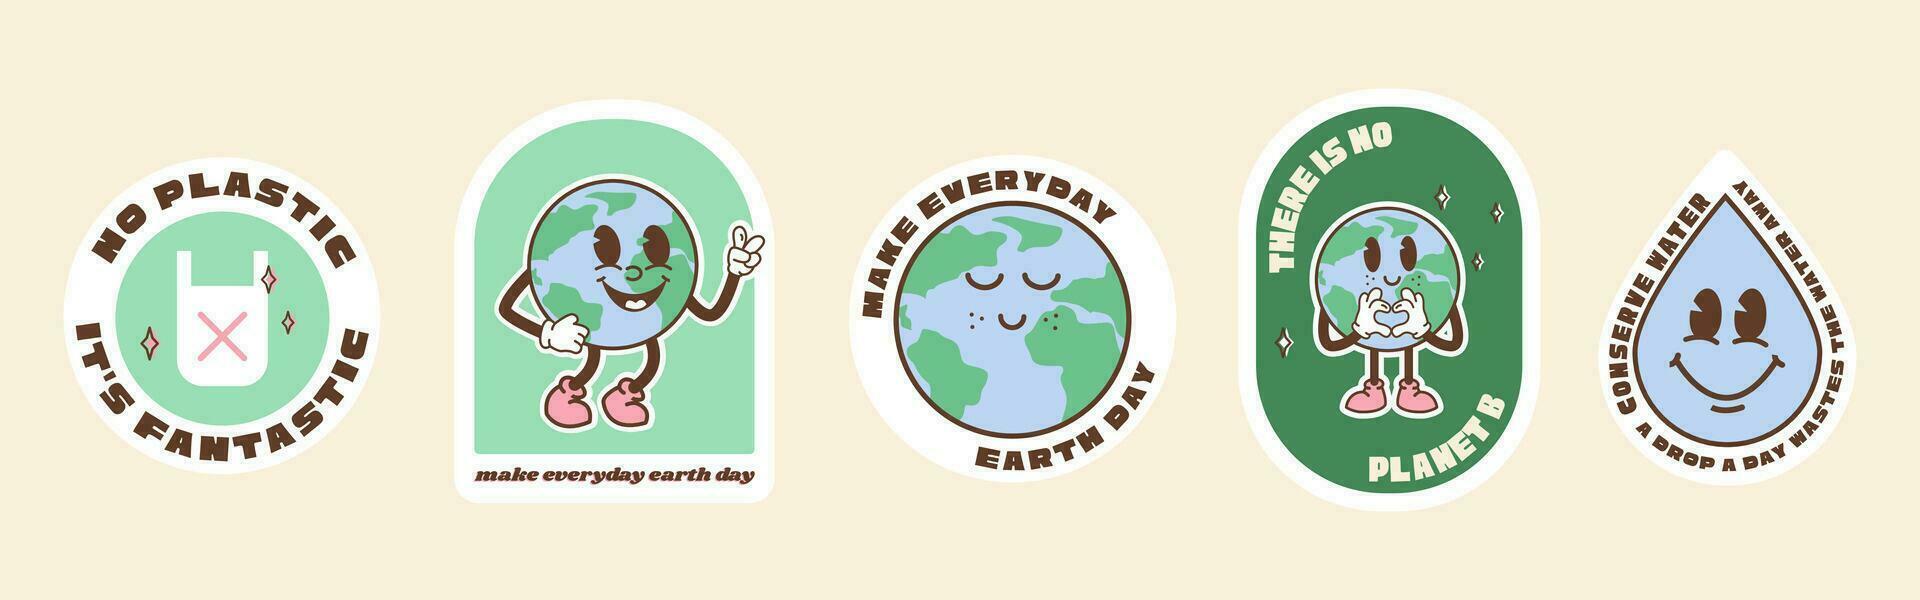 opslaan de planeet stickers in modieus retro tekenfilm stijl. sticker pak voor aarde of wereld milieu dag. grappig vector illustratie van planeet aarde, wereldbol met glimlachen gezicht. eco groen etiketten of insignes.